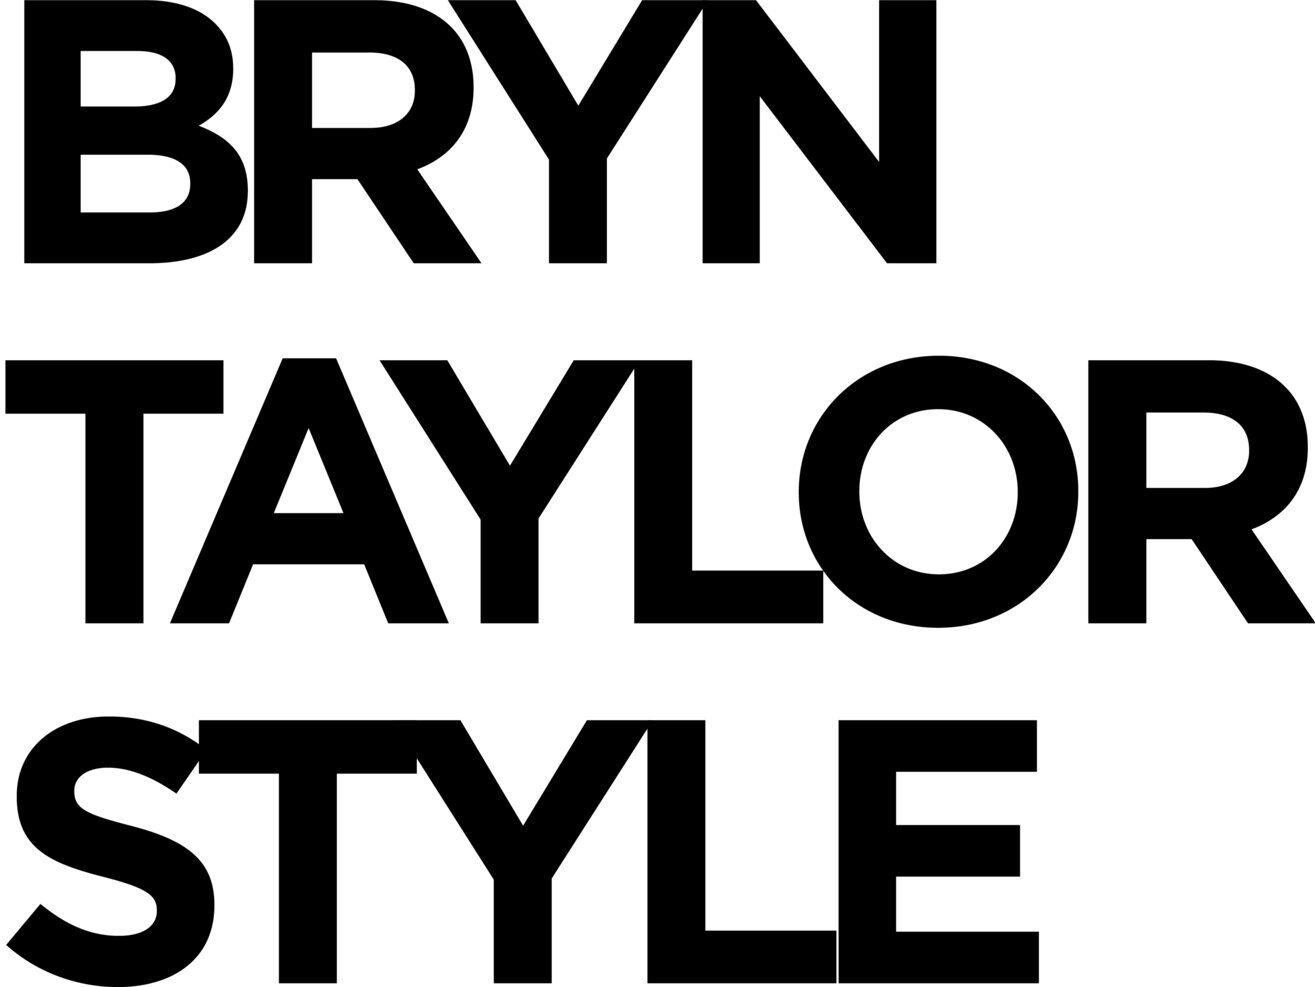 BRYN TAYLOR